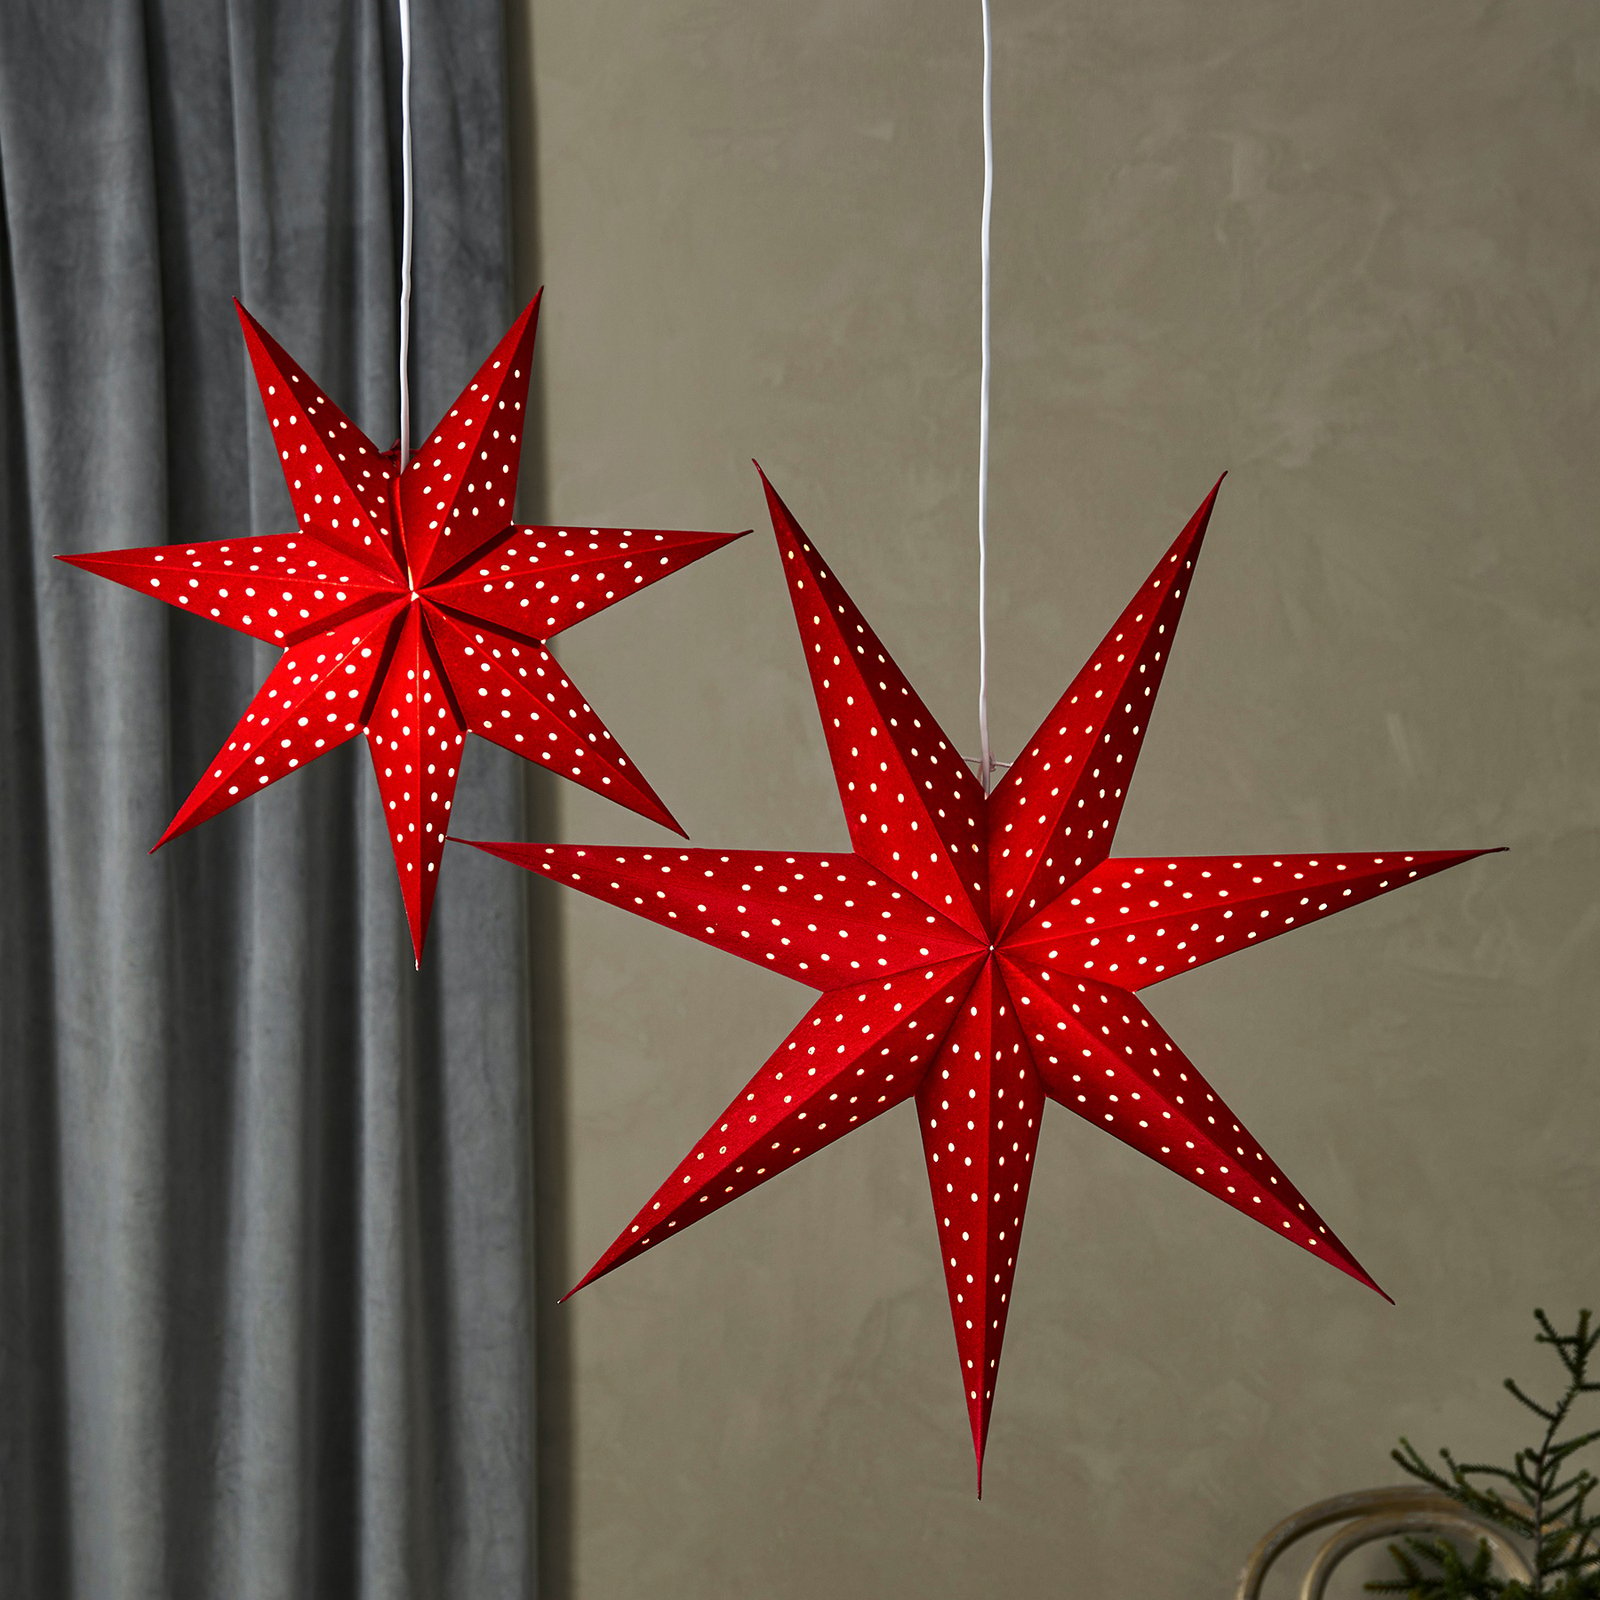 LED závěsná hvězda Blink, sametový vzhled Ø 75cm červená